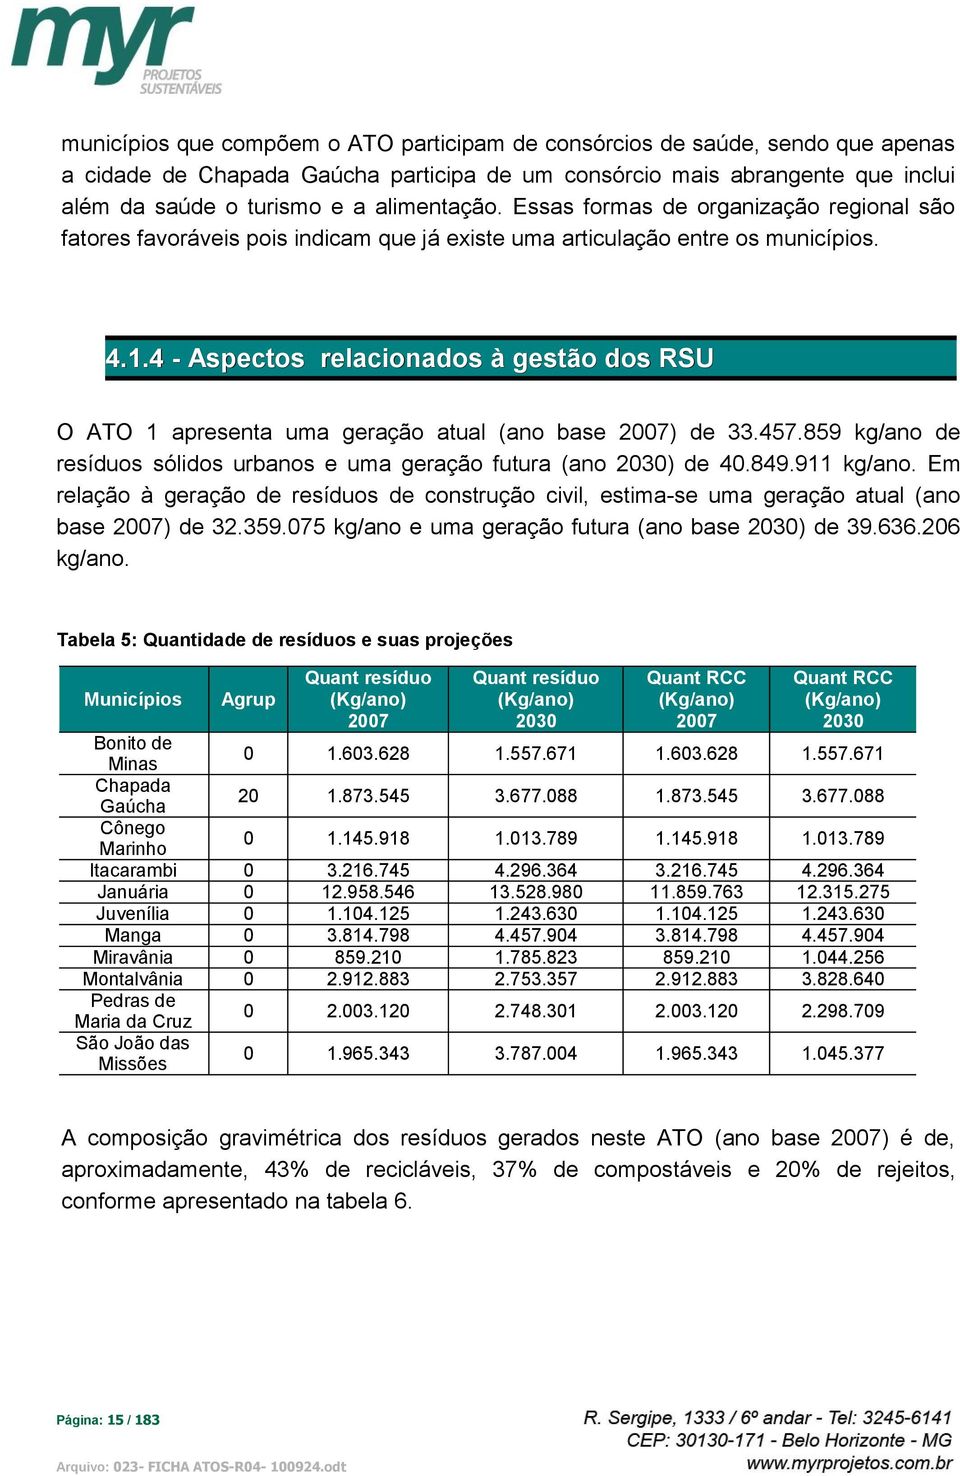 4 - Aspectos relacionados à gestão dos RSU O ATO 1 apresenta uma geração atual (ano base 2007) de 33.457.859 kg/ano de resíduos sólidos urbanos e uma geração futura (ano 2030) de 40.849.911 kg/ano.